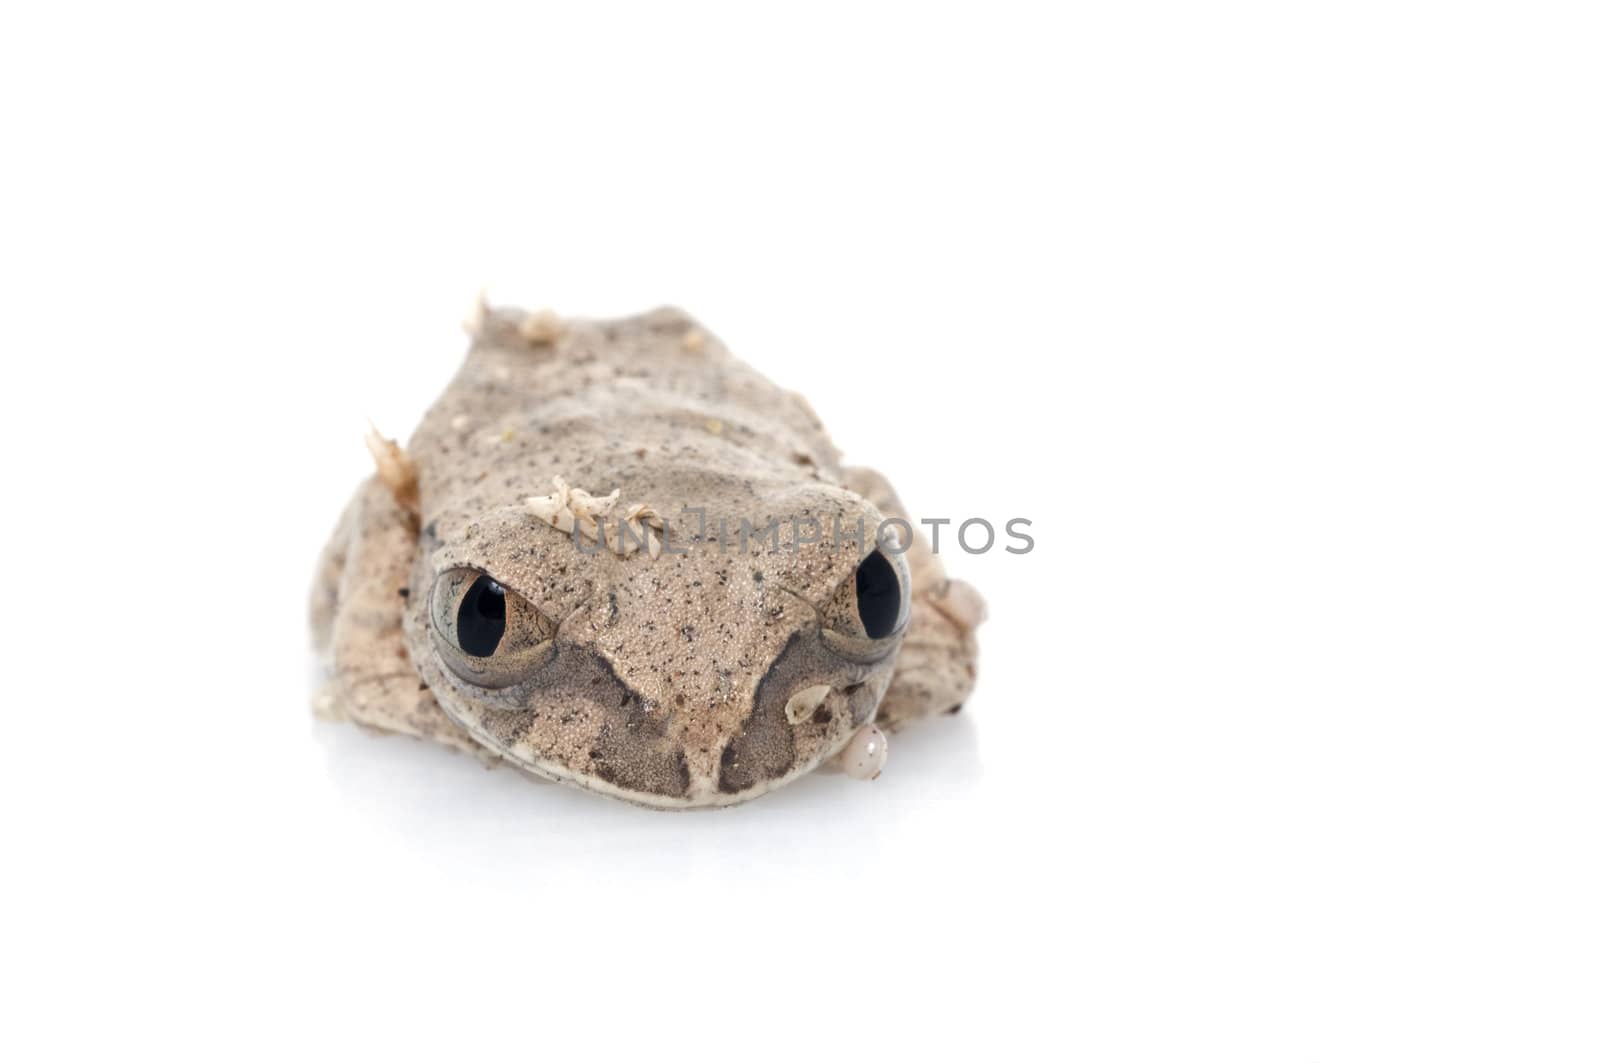 African Big eyed Tree Frog (Leptopelis species)